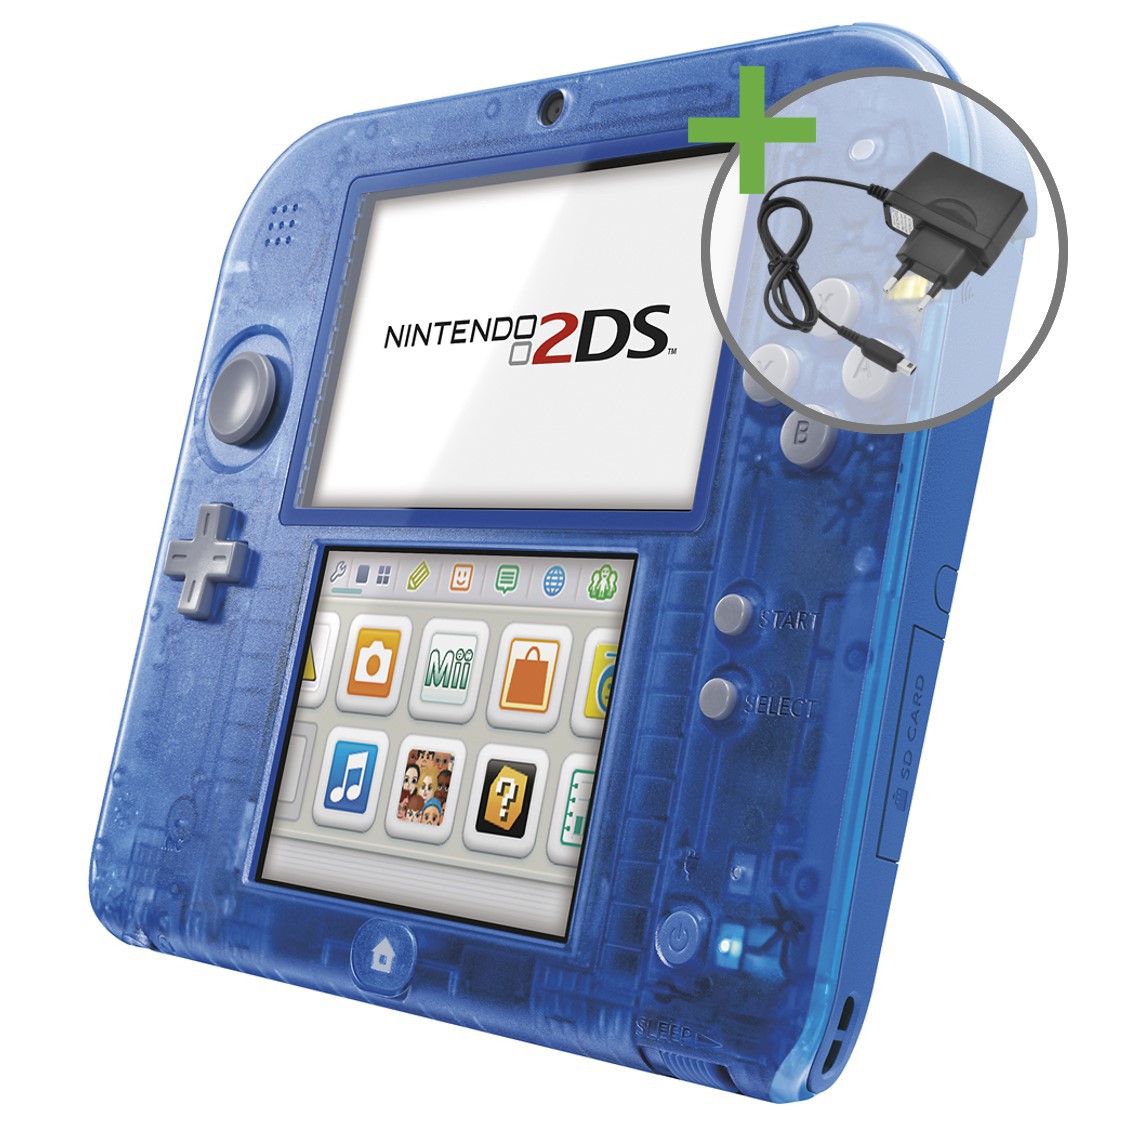 Nintendo 2DS - Crystal Blue [Complete] - Nintendo 3DS Hardware - 2